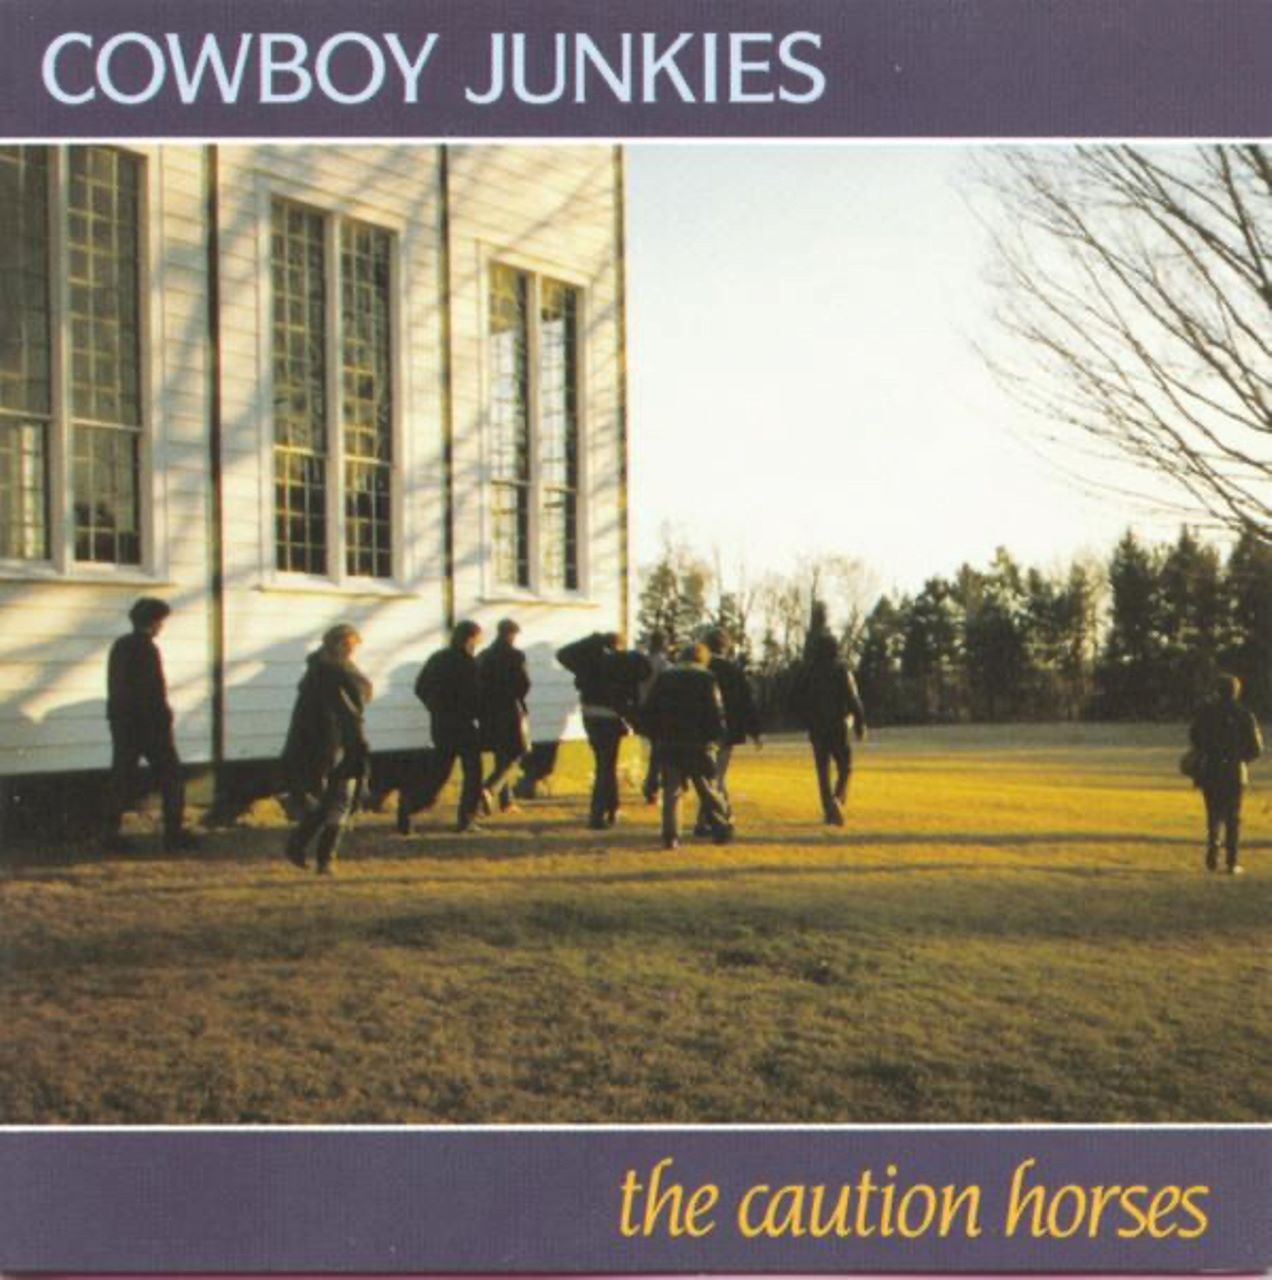 Cowboy Junkies - The Caution Horses cover album